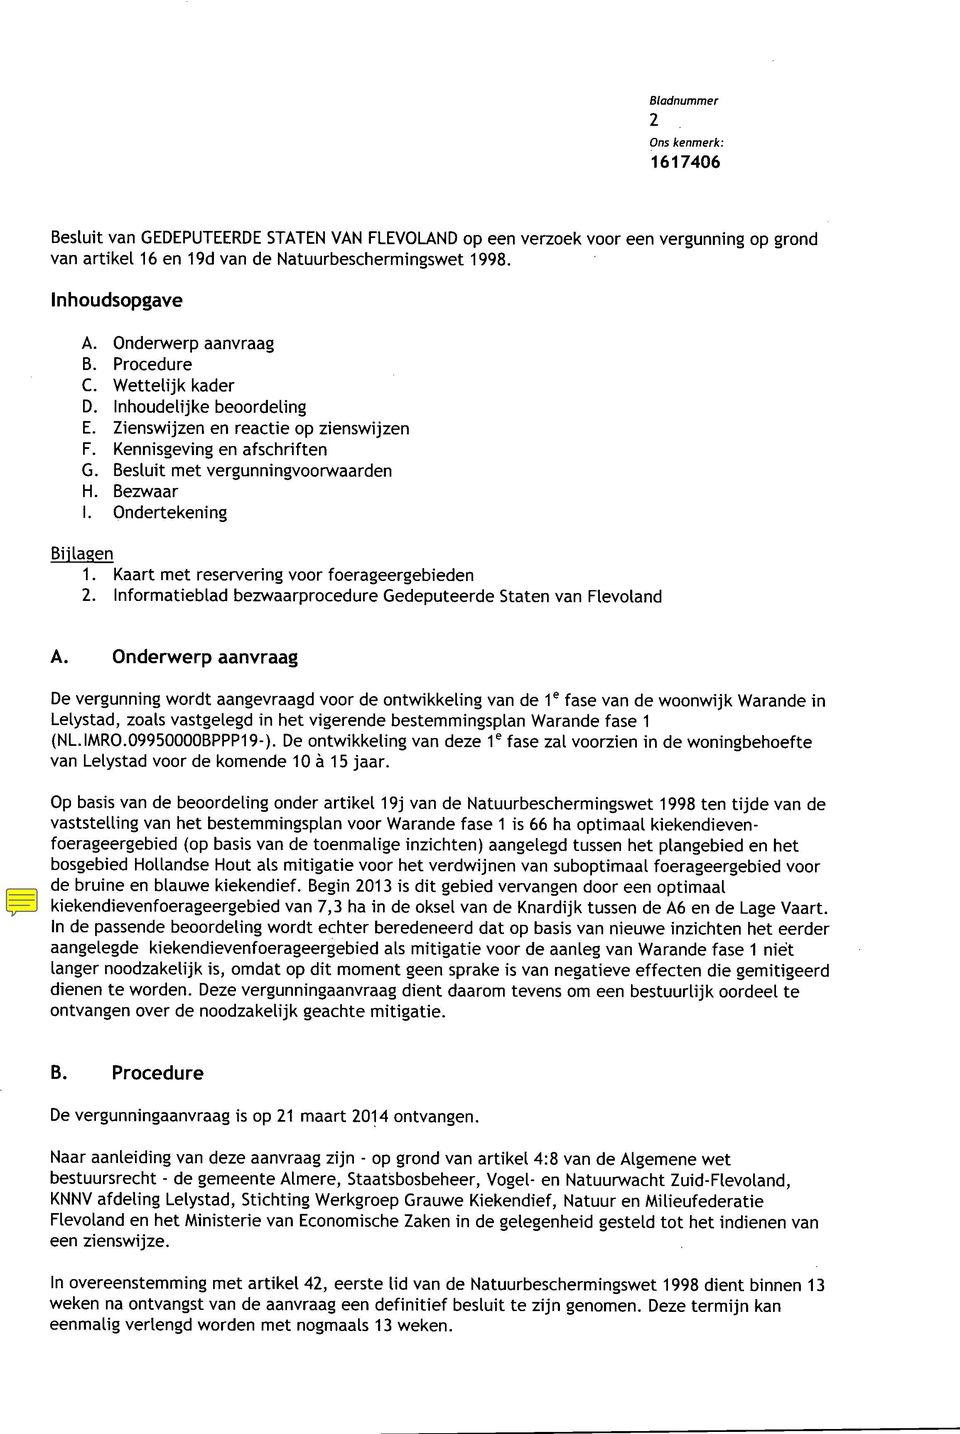 Kaart met reservering voor foerageergebieden 2. Informatieblad bezwaarprocedure Gedeputeerde Staten van Flevoland A.